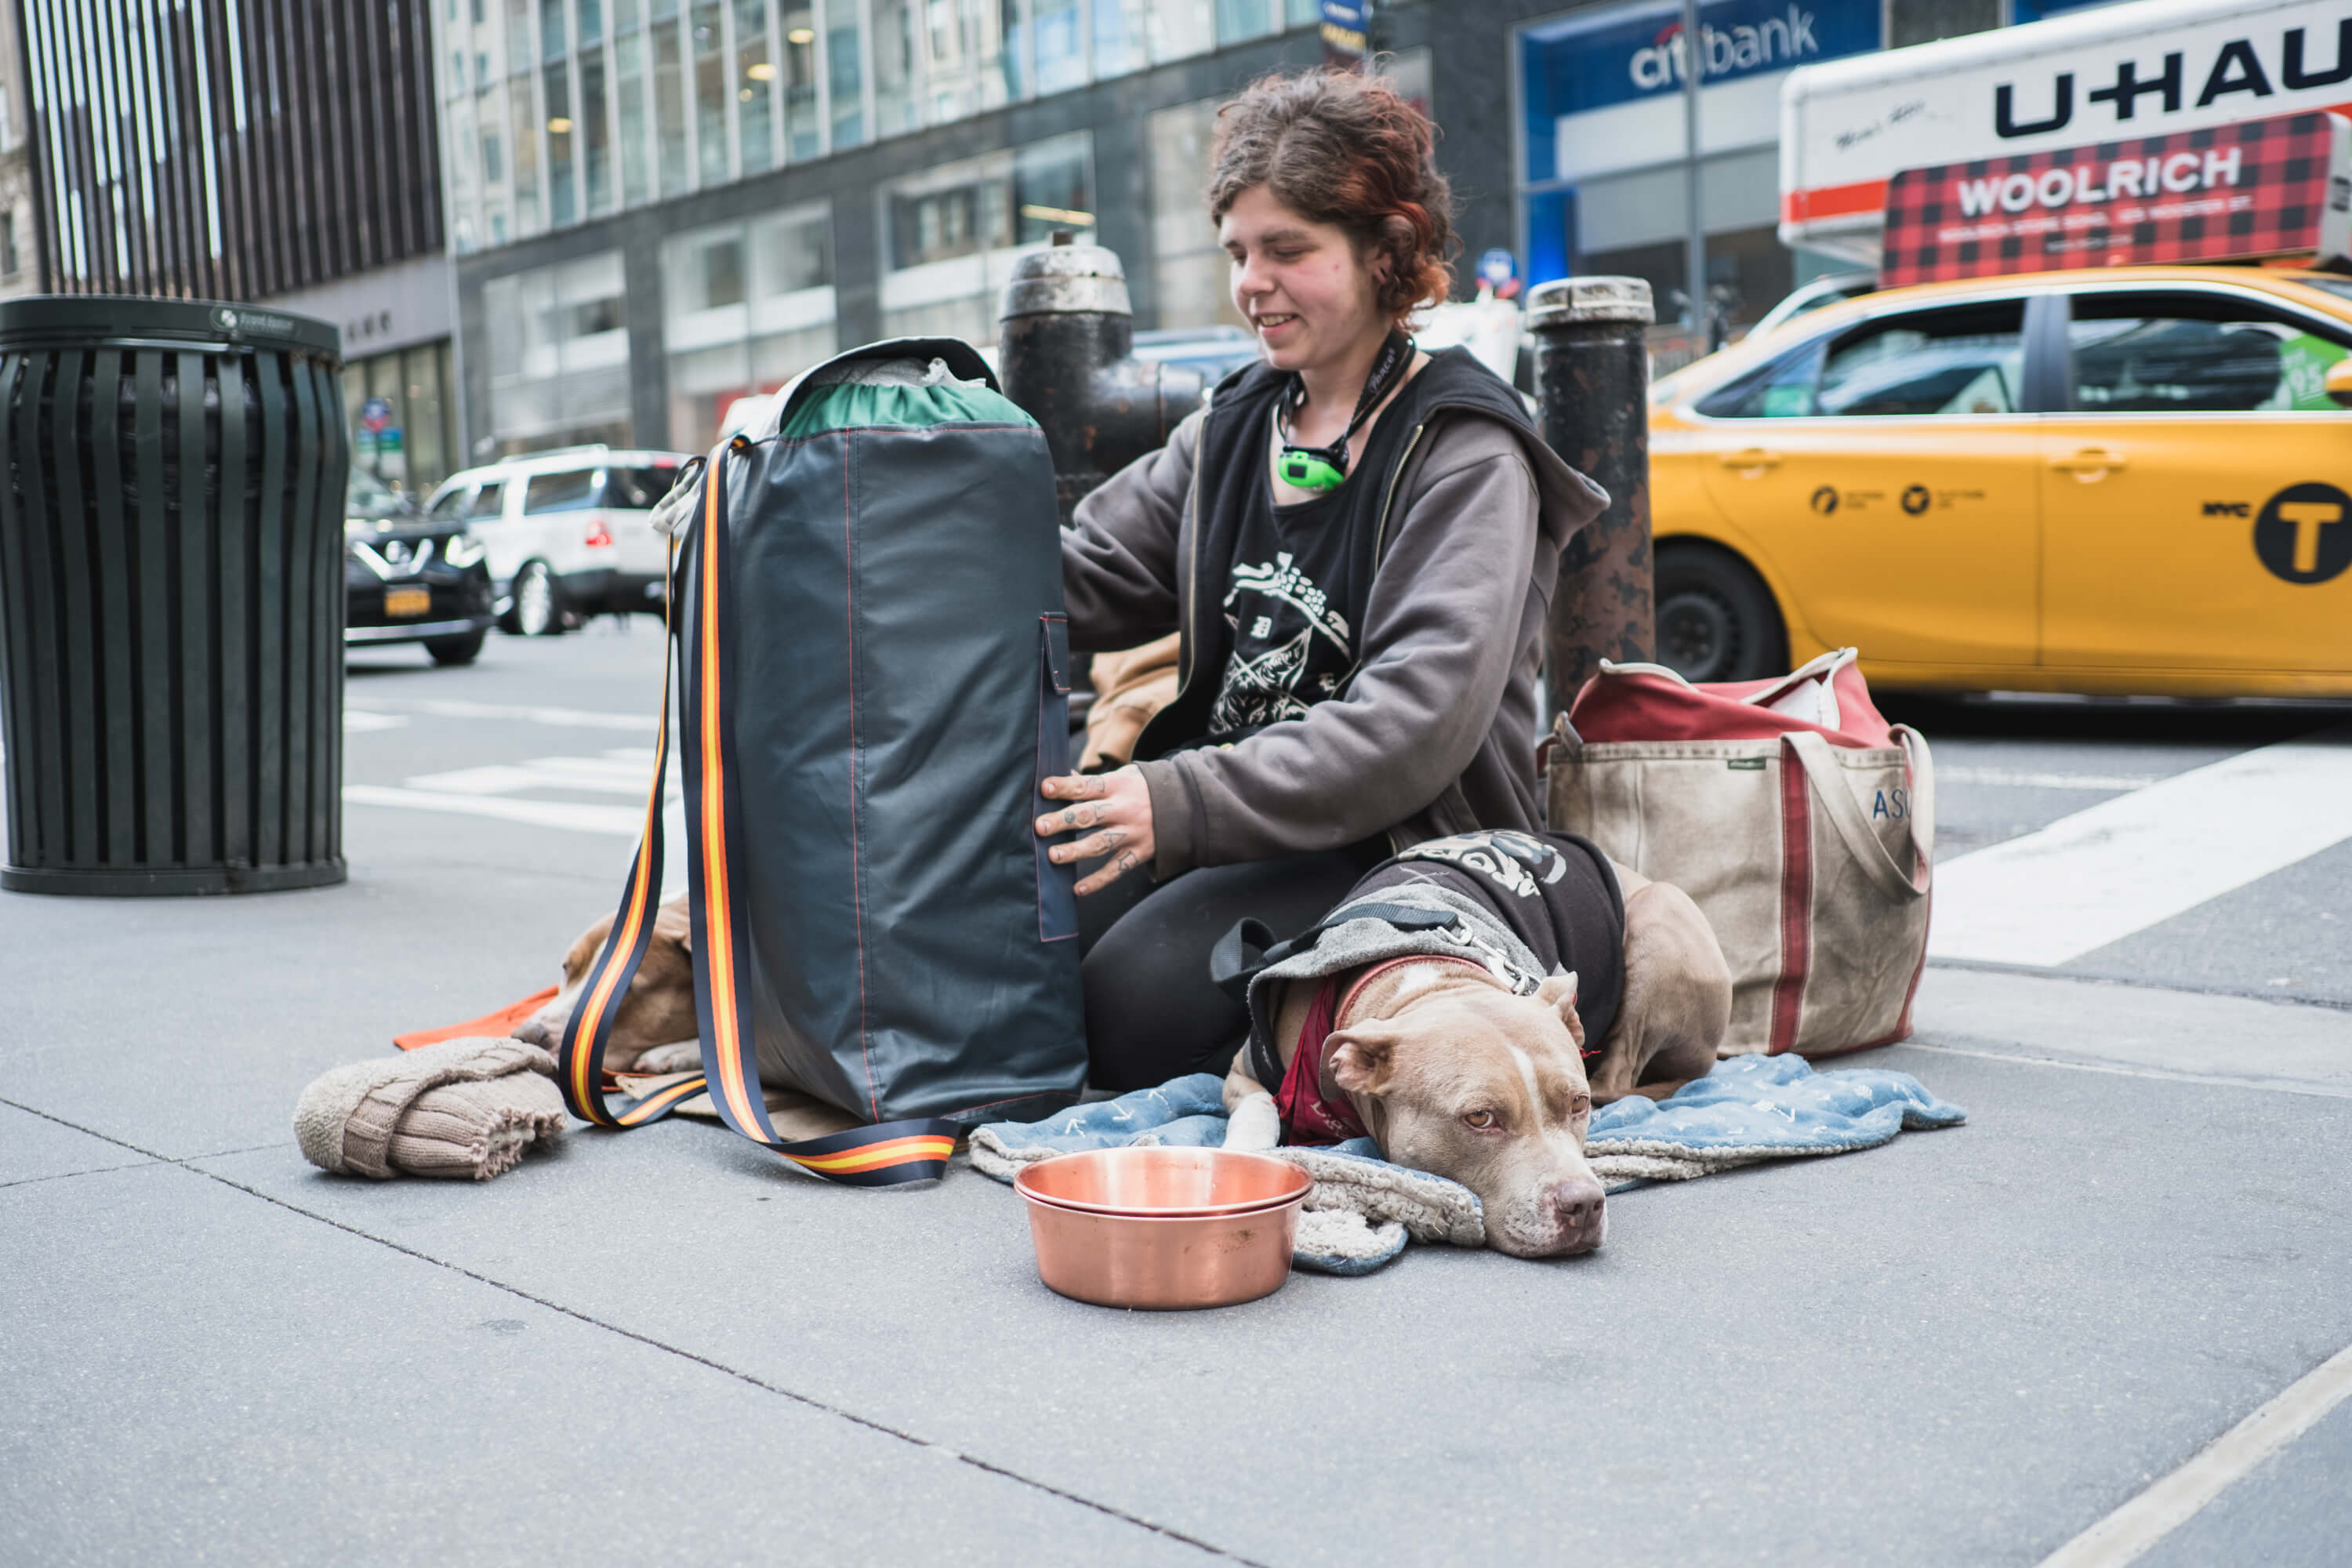 Ook in de Verenigde Staten verslechtert de situatie voor daklozen